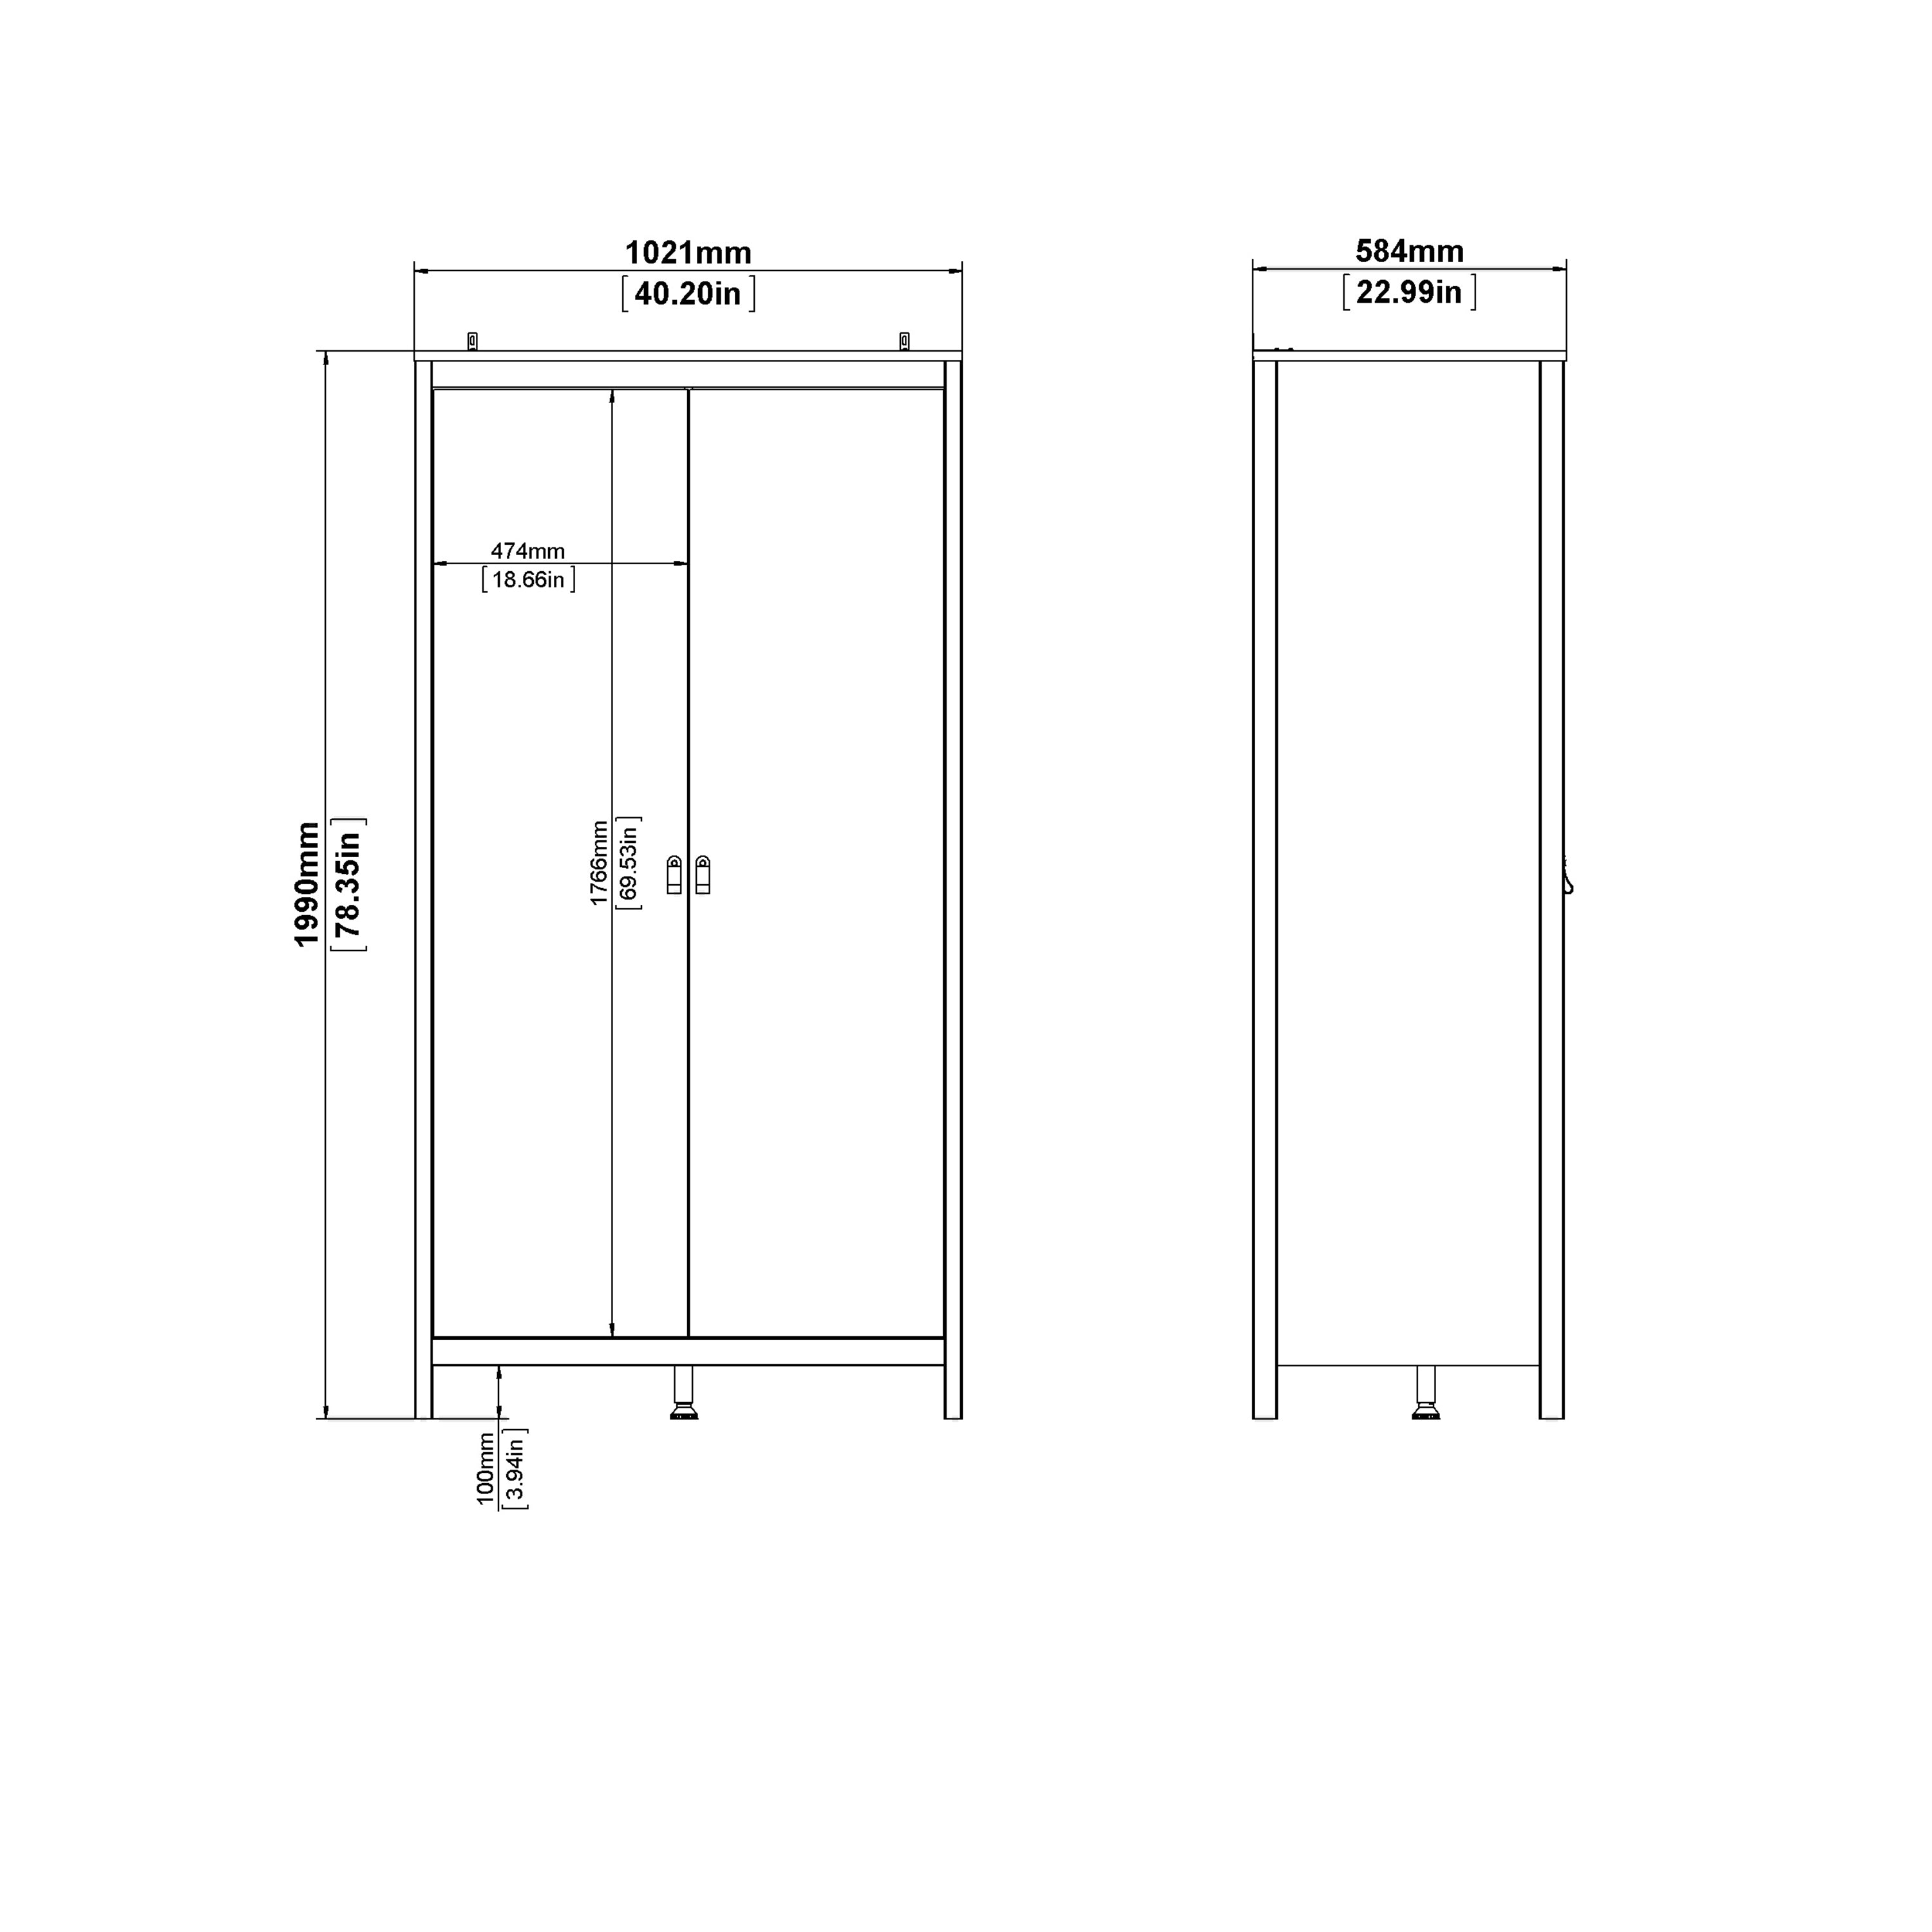 Barcelona Wardrobe with 2 Doors in Matt Black Furniture To Go Ltd